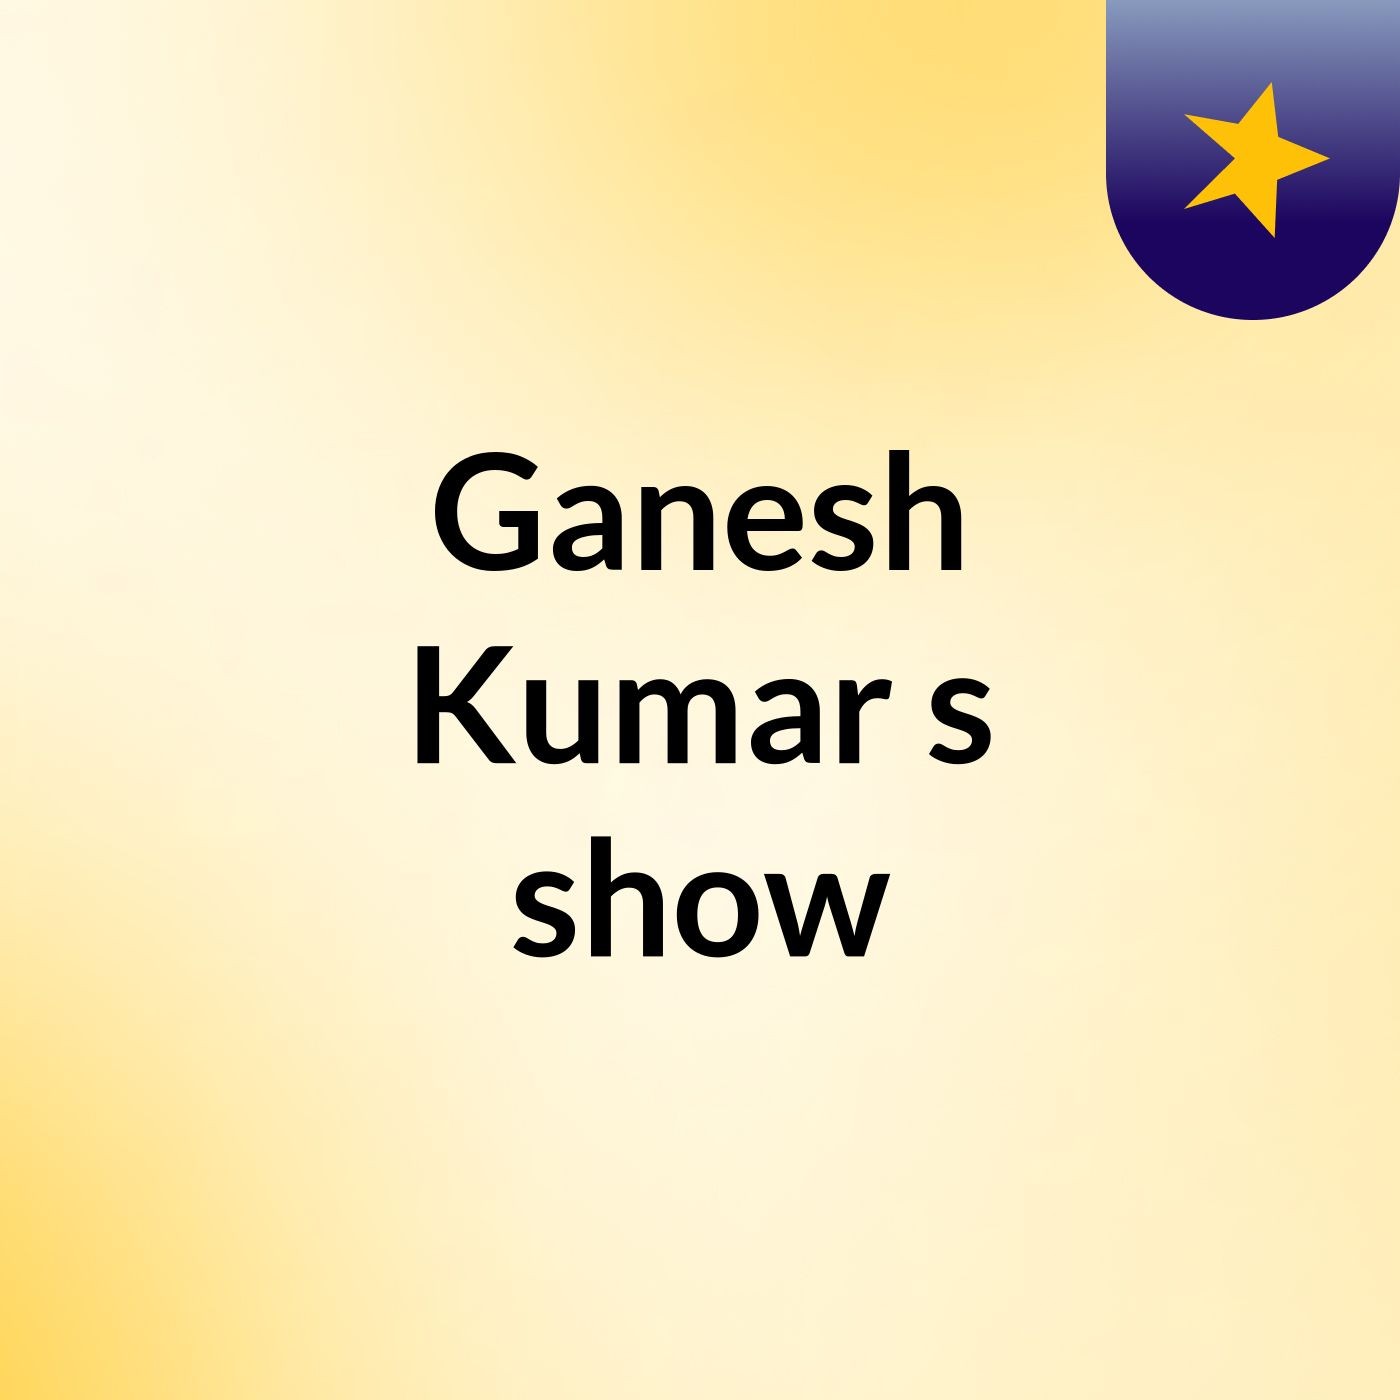 Ganesh Kumar's show